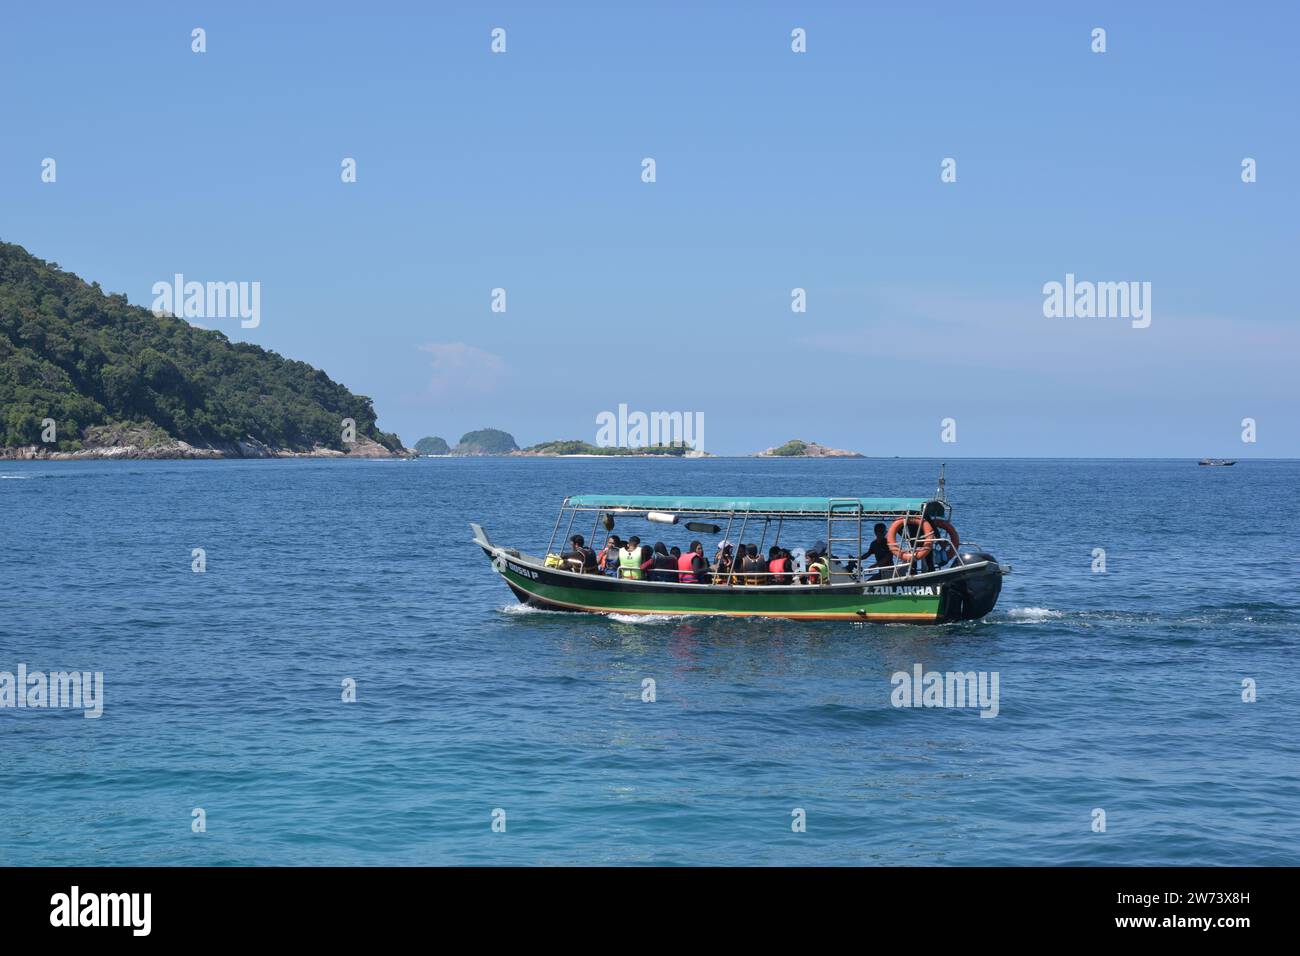 barca turistica in un viaggio di snorkeling circonda l'isola sperando, viaggi e attività turistiche, isola di perhentian, turismo Foto Stock